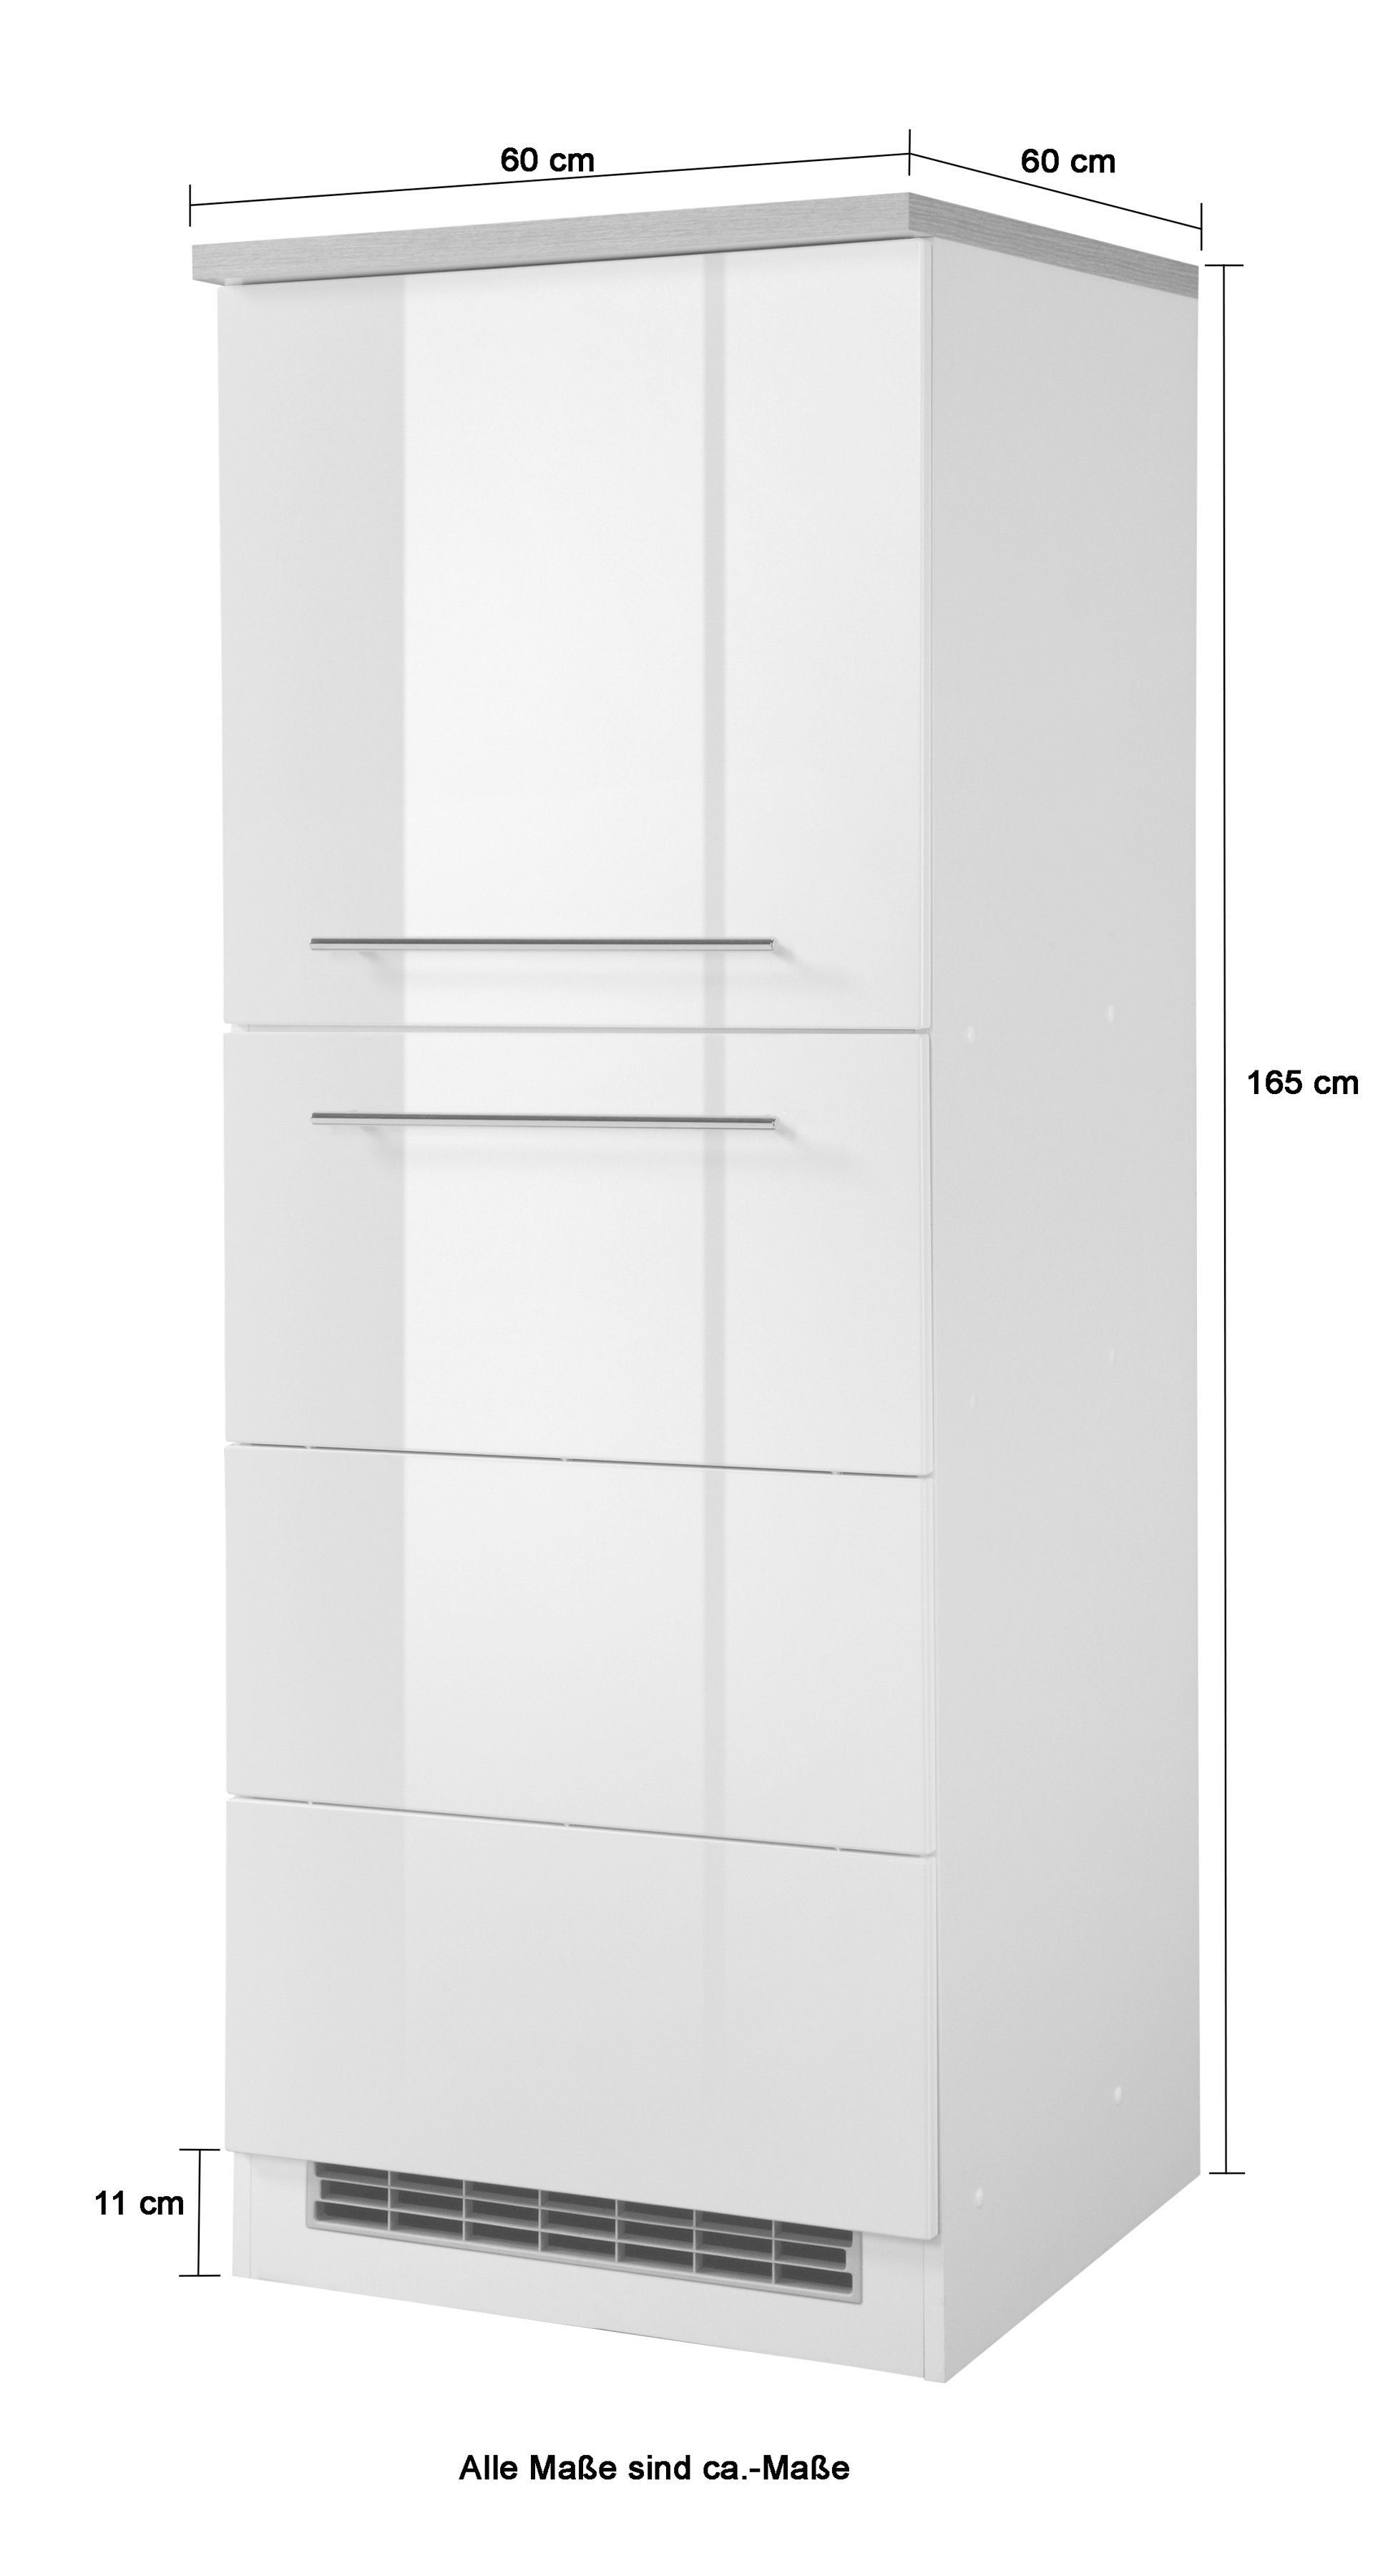 HELD MÖBEL Kühlumbauschrank Einbaukühlschrank grau grafitgrau 60 | cm breit, für Hochglanz Wien